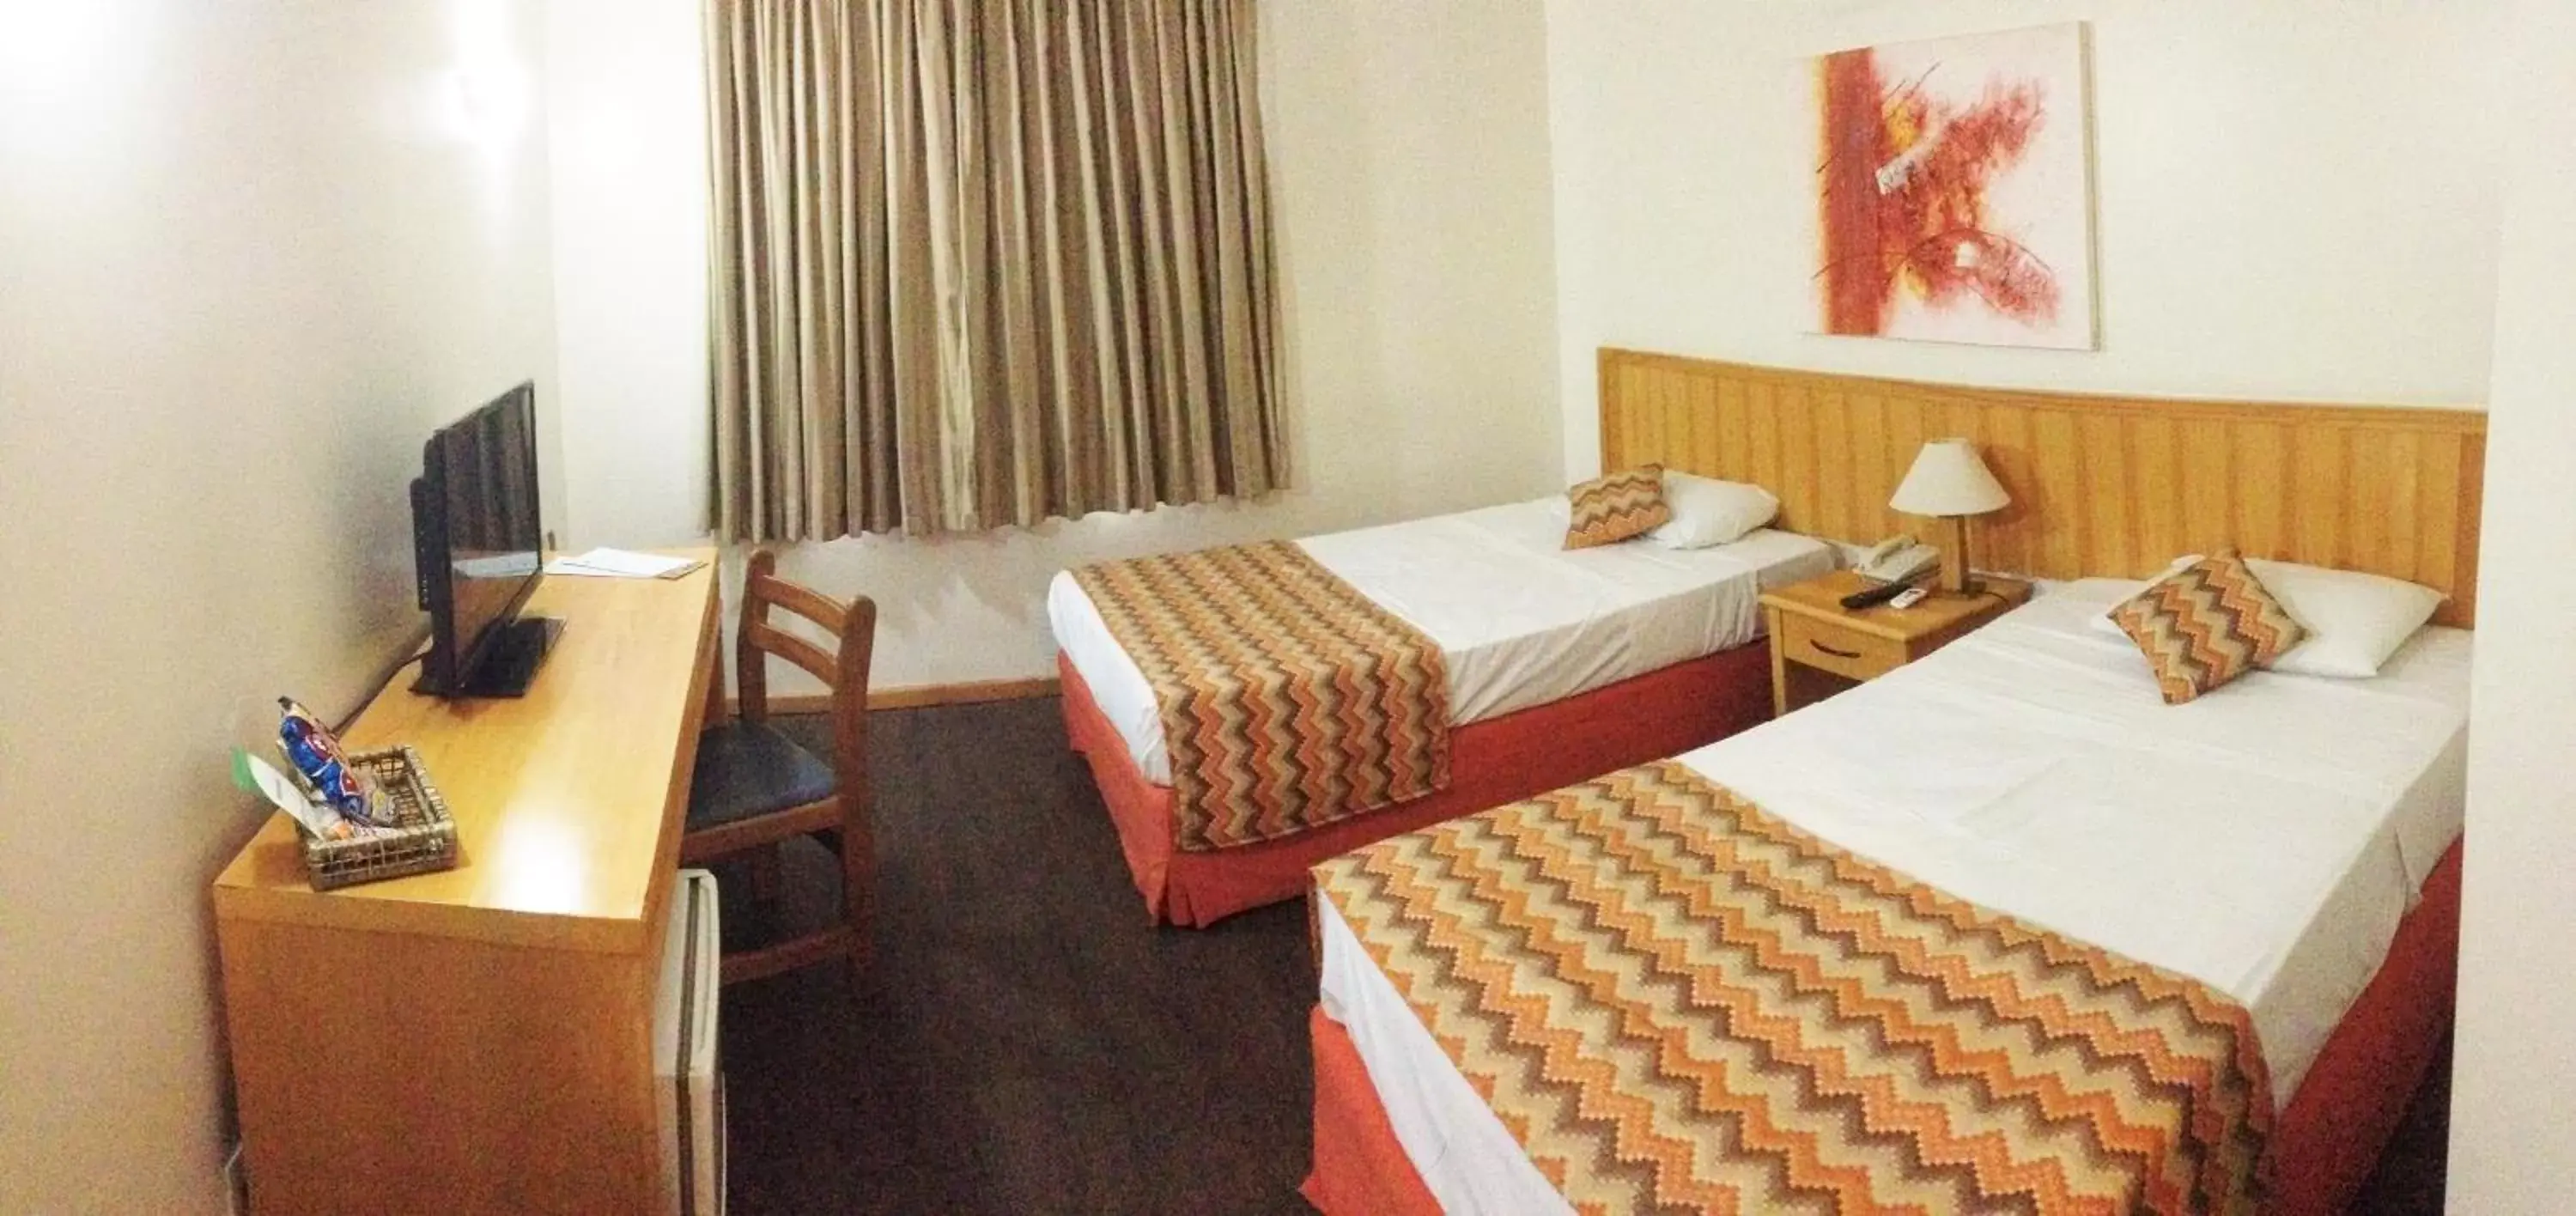 Bedroom, Room Photo in Nacional Inn Sorocaba